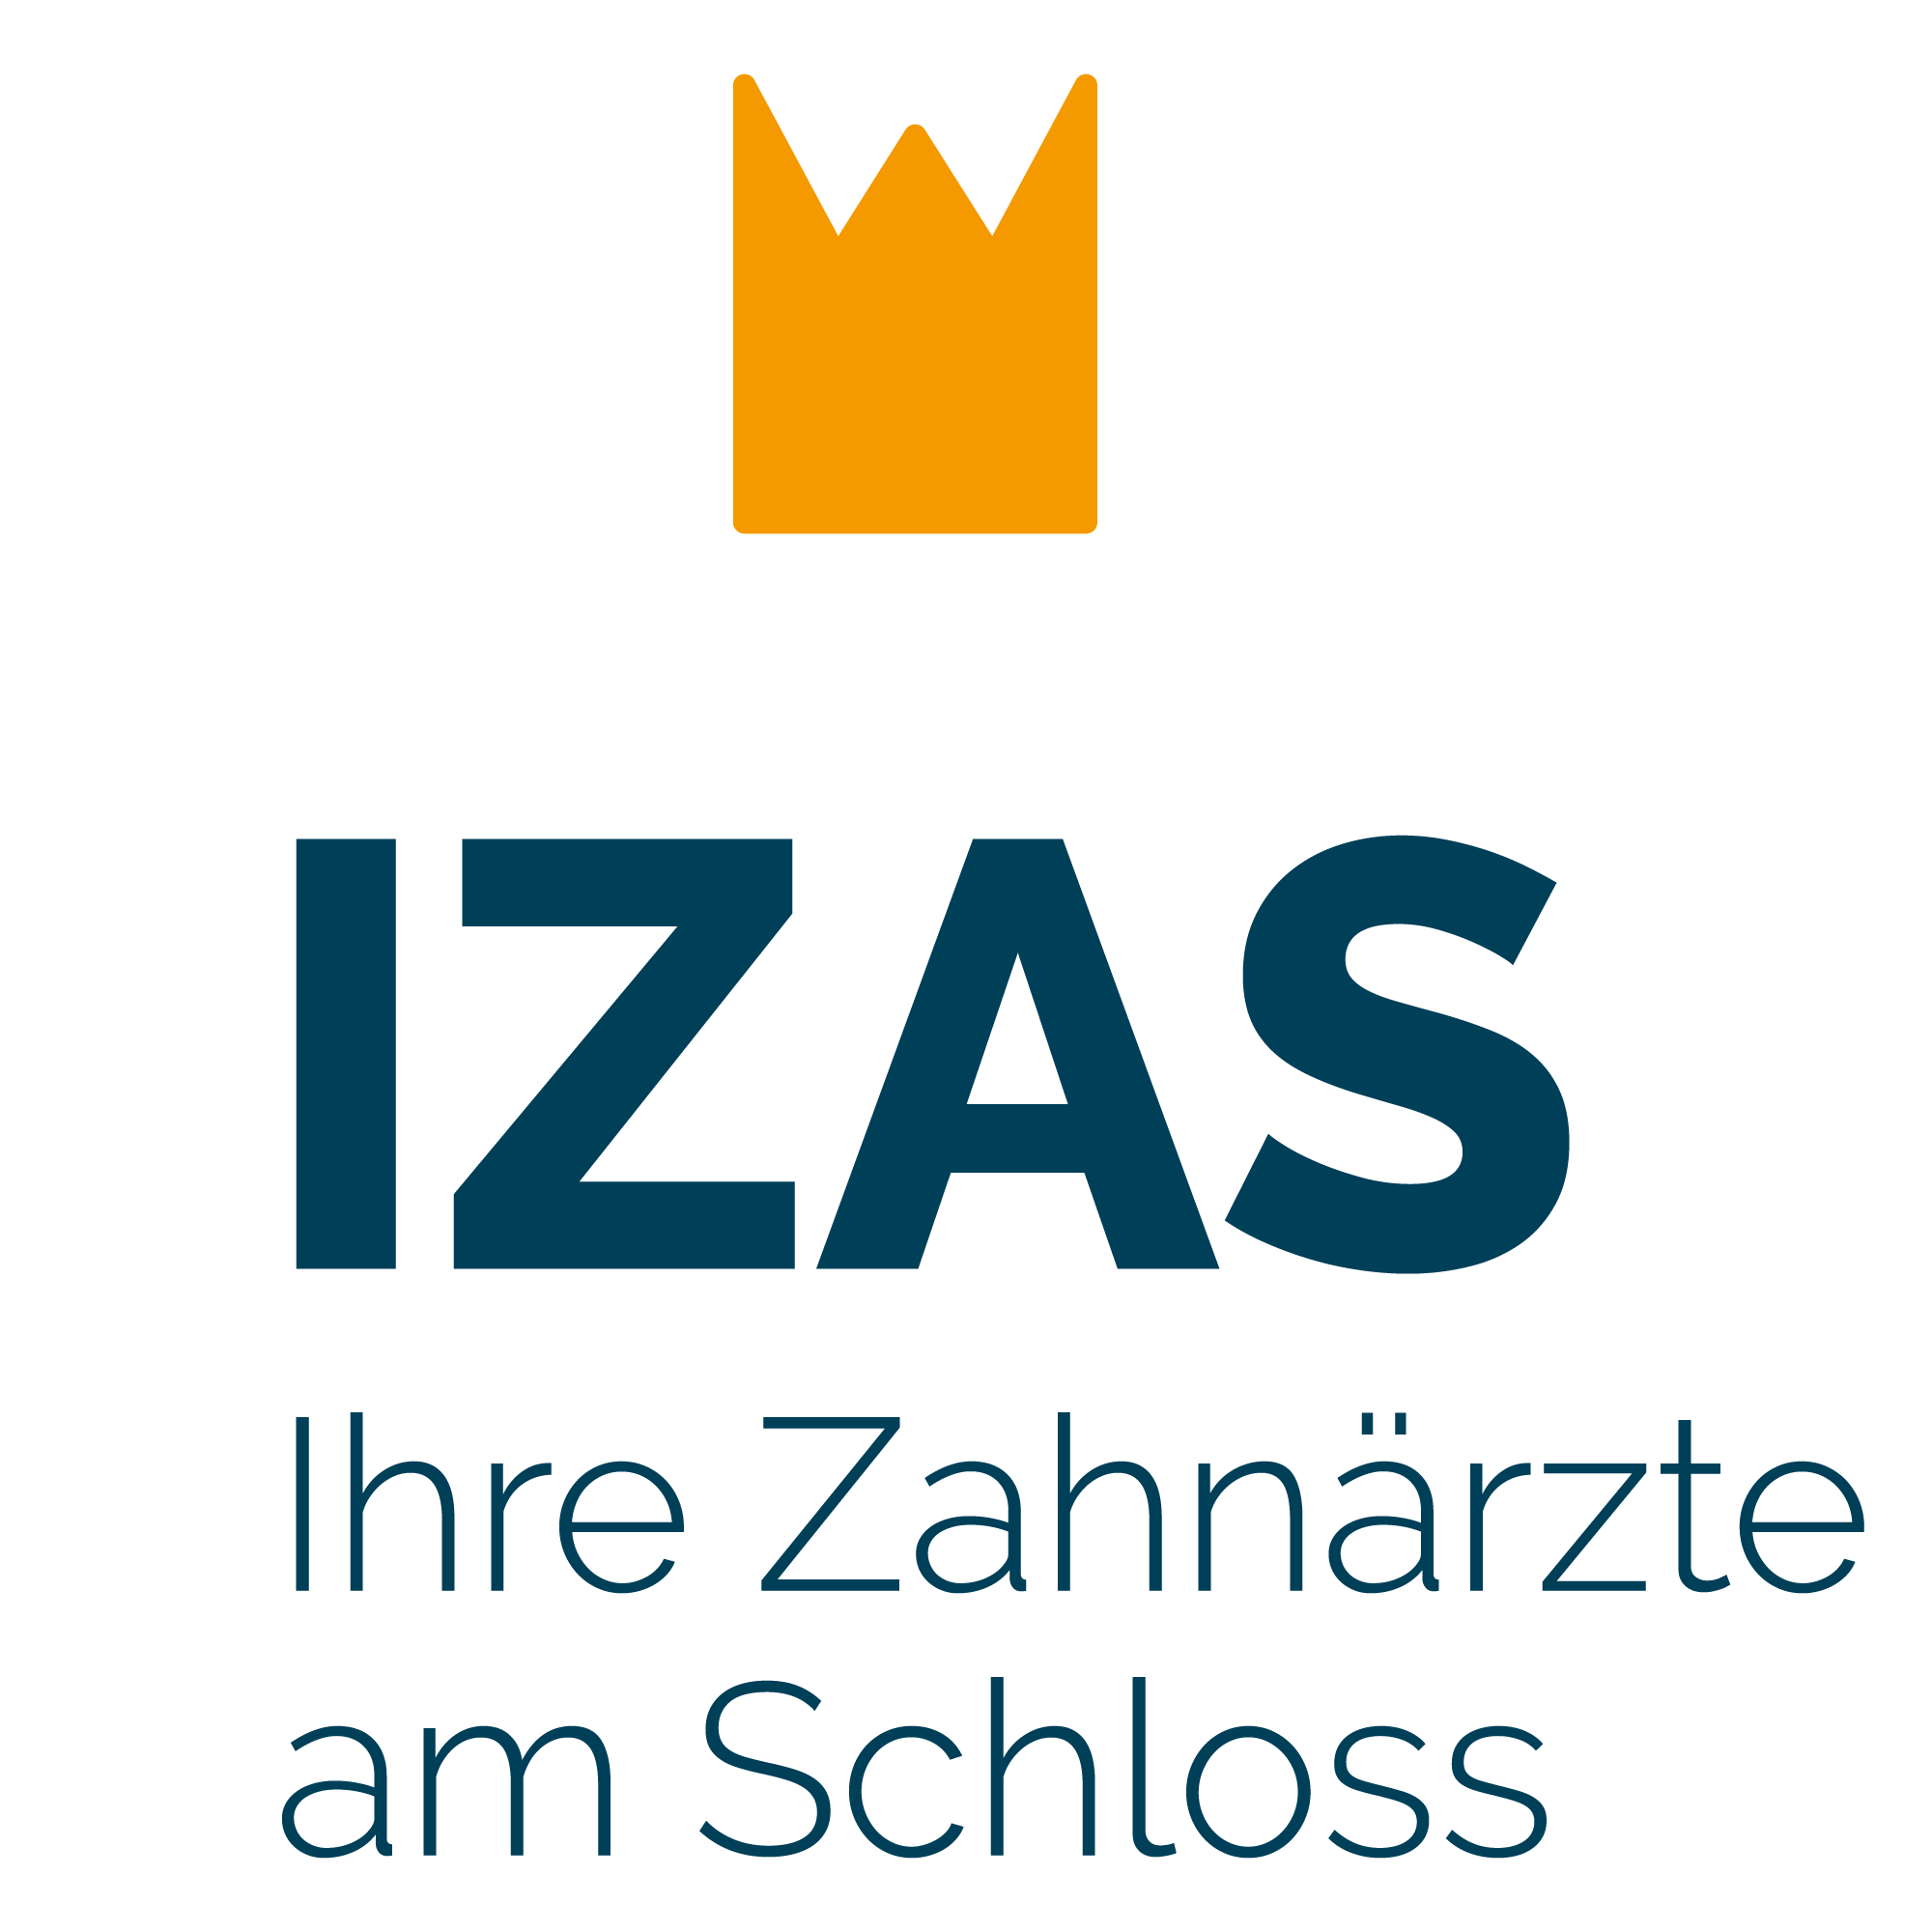 IZAS - Ihre Zahnärzte am Schloss (Bensberg) Logo